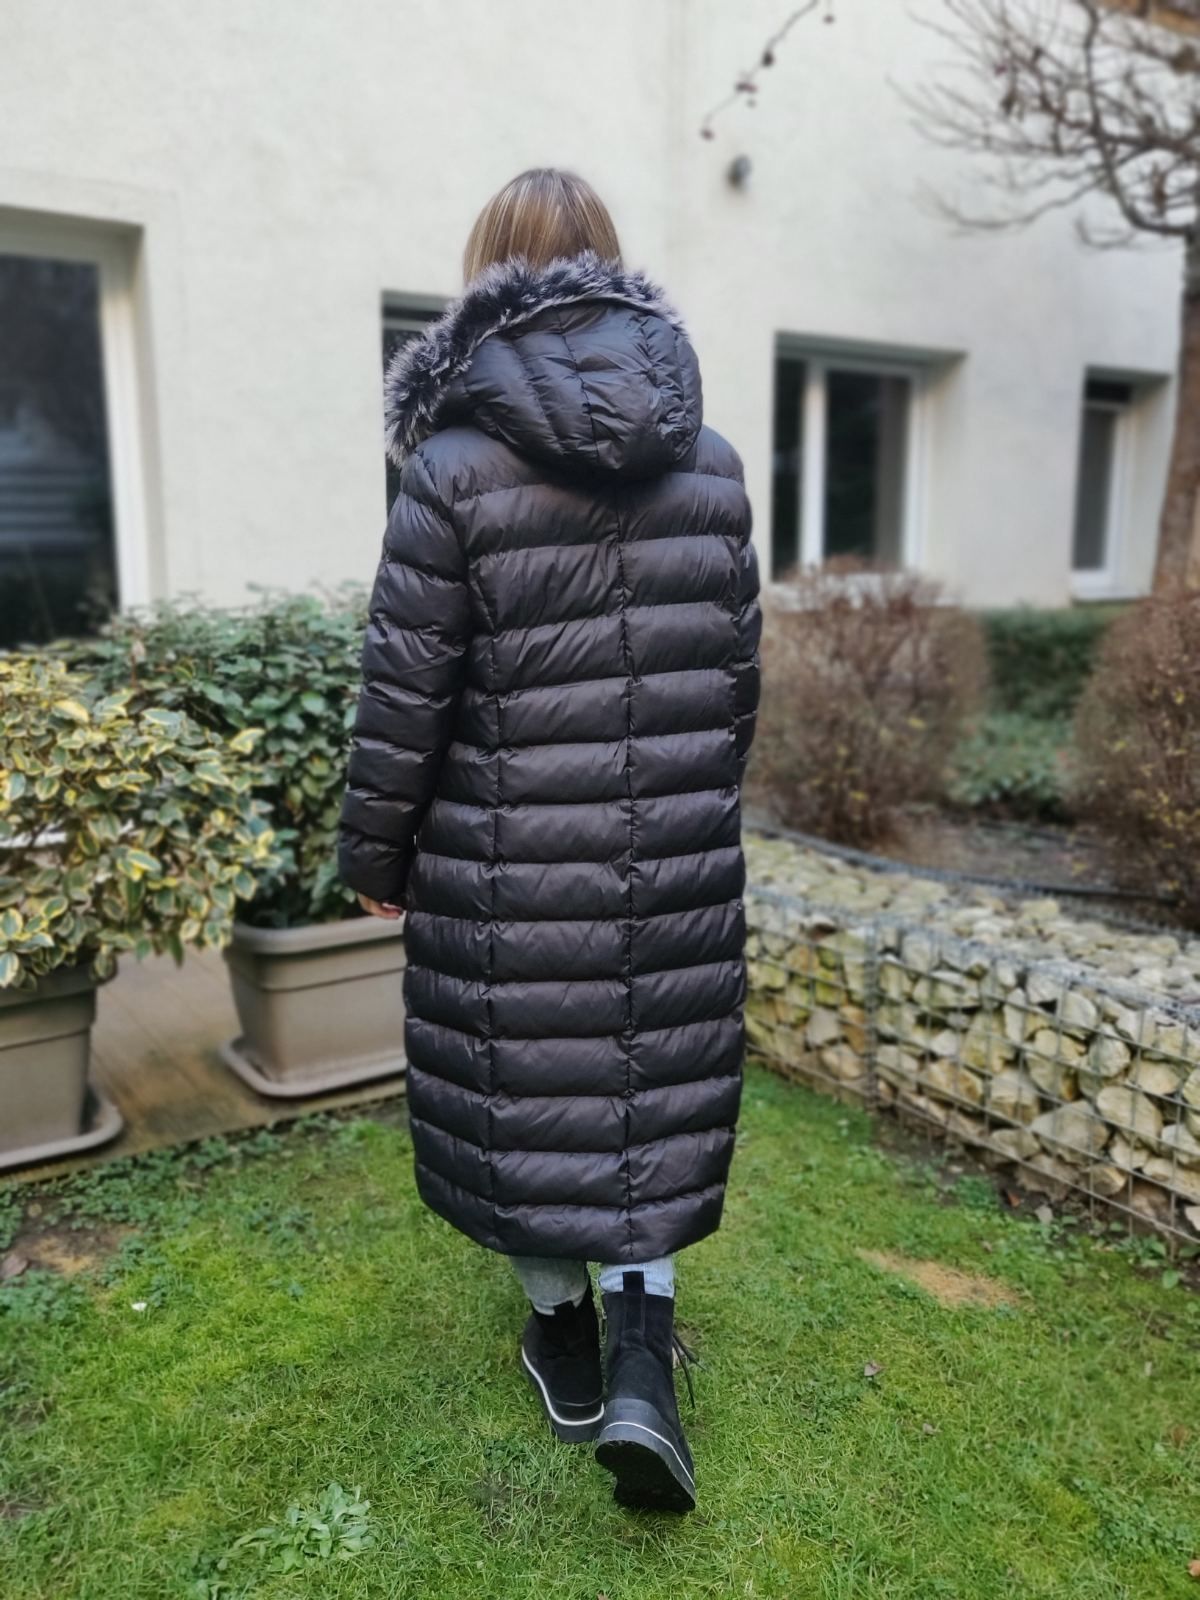 Довга зимова жіноча куртка